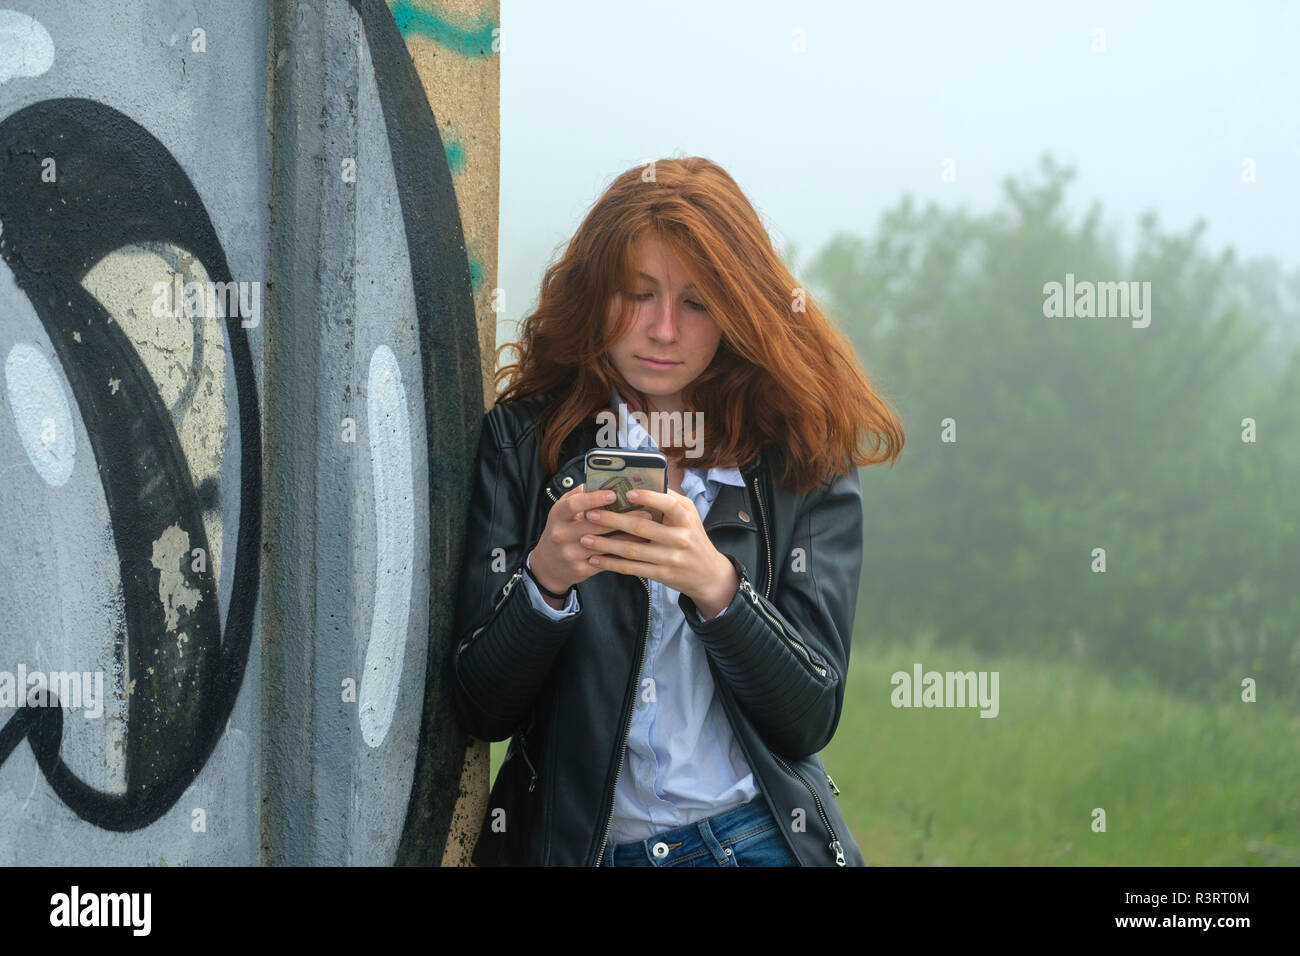 L'Italia, Finale Ligure, ritratto di testa rossa ragazza adolescente appoggiata contro il murale guardando al telefono cellulare Foto Stock